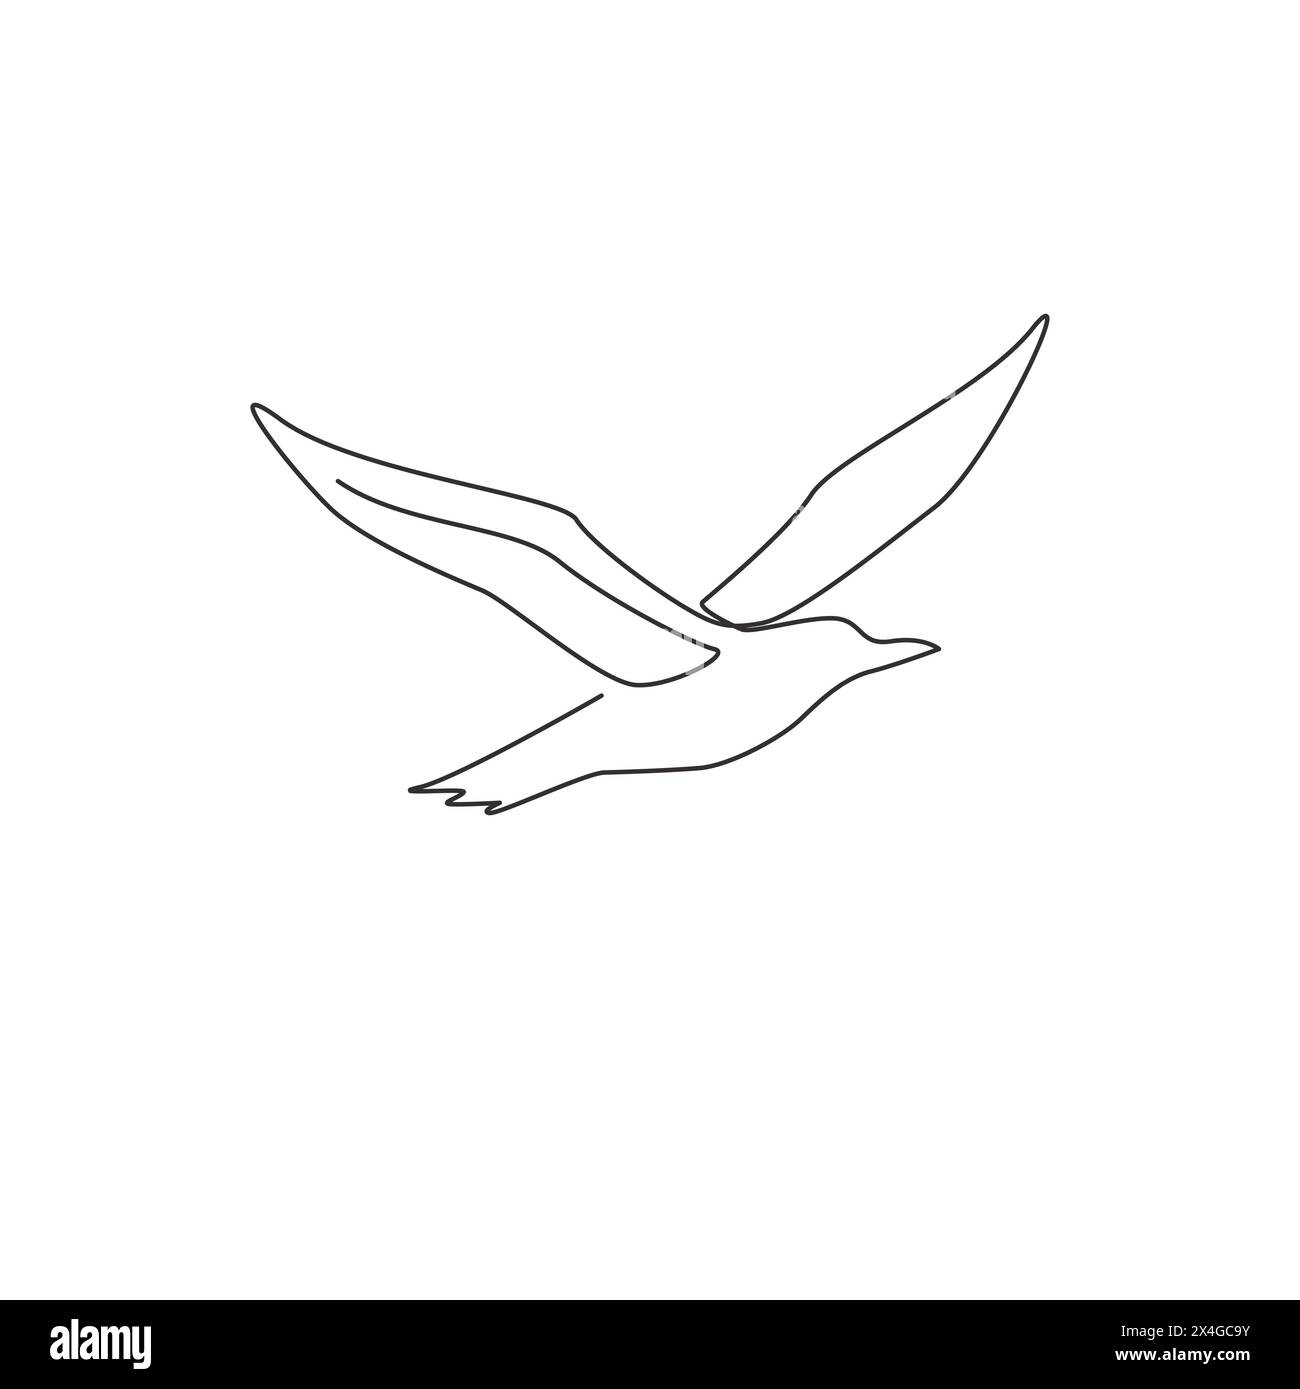 Un dessin en ligne continue d'albatros mignon pour l'identité du logo de conservation des oiseaux. Adorable concept de mascotte d'oiseau de mer pour icône de zoo national. Sin dynamique Illustration de Vecteur